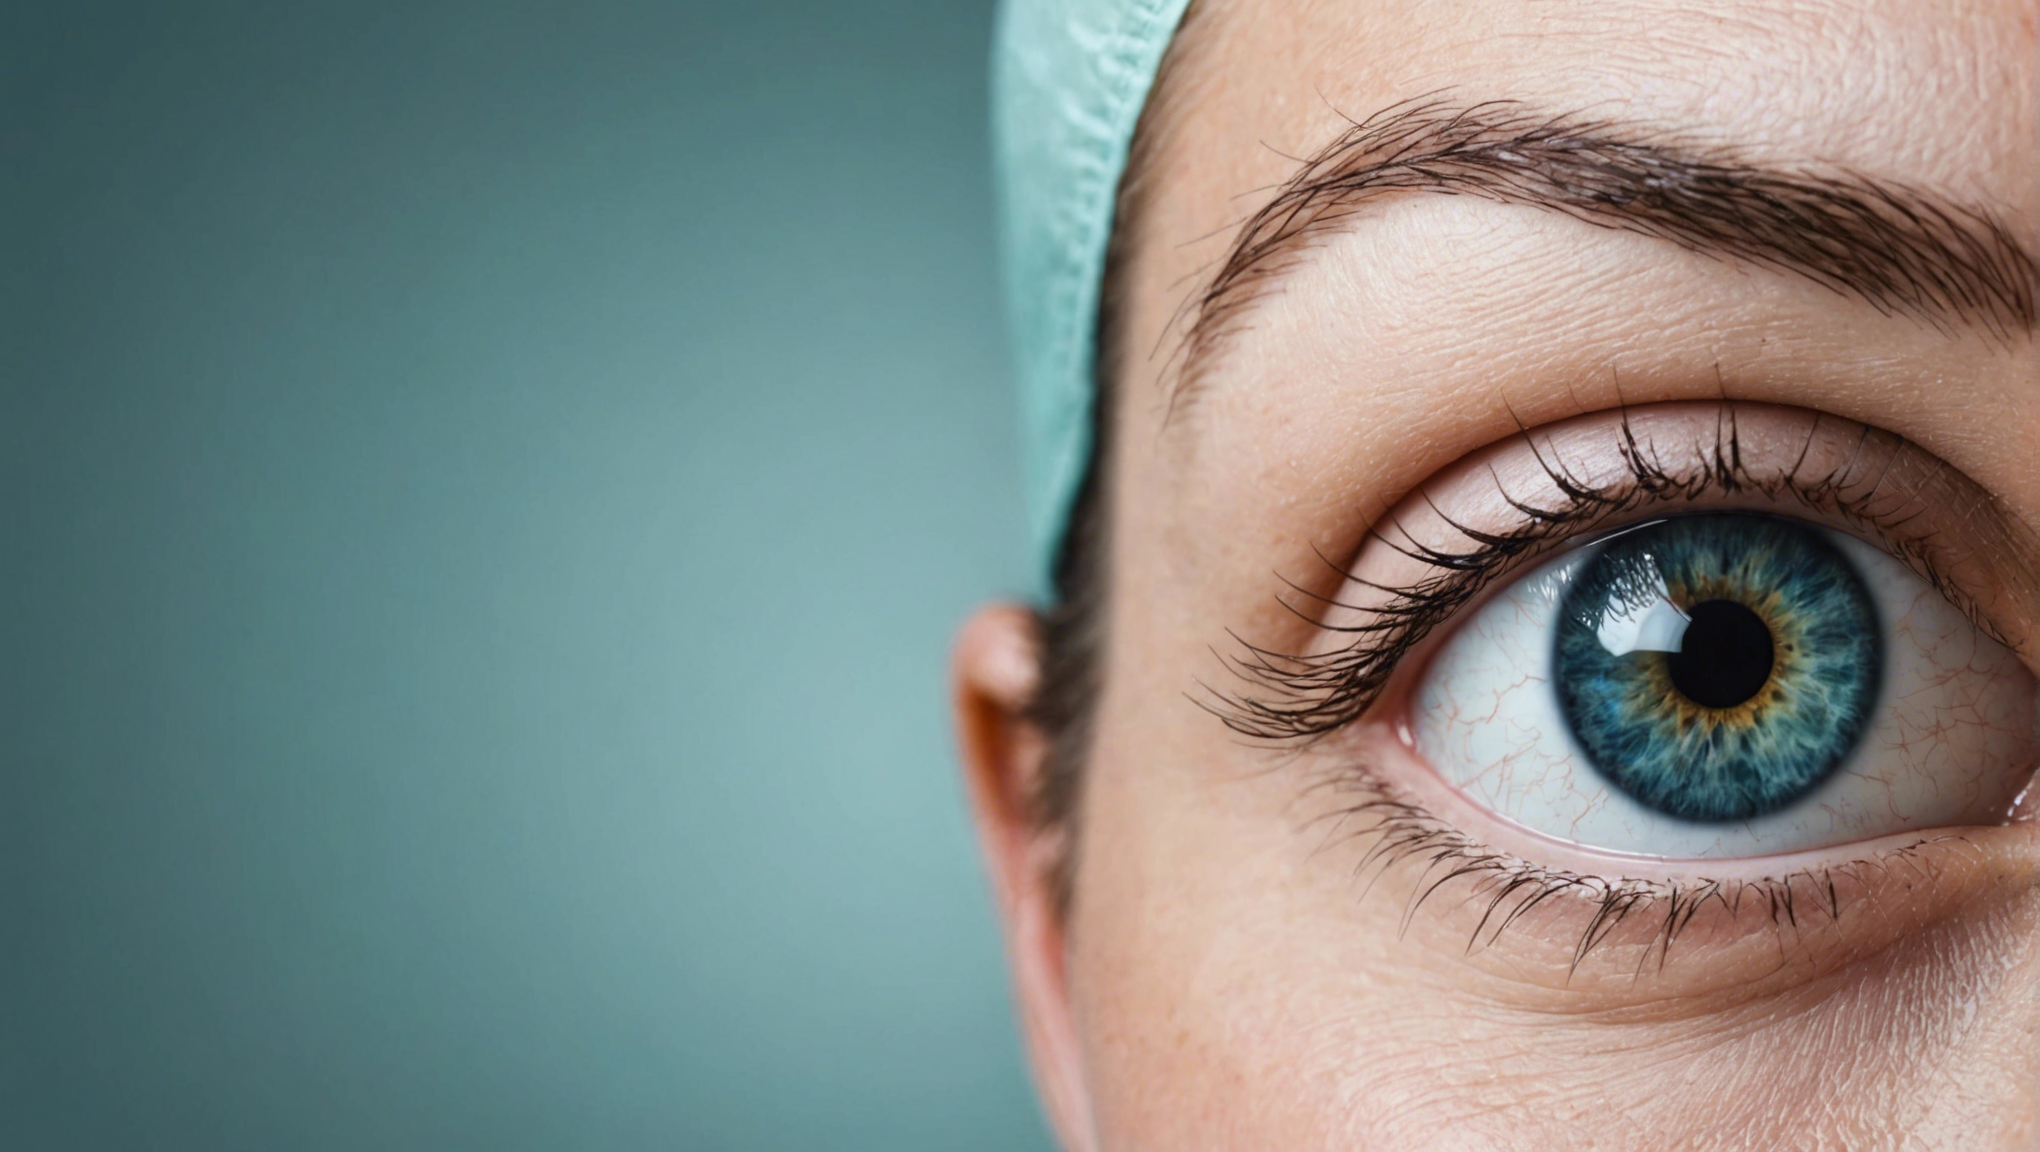 découvrez les critères d'éligibilité pour la chirurgie des yeux et comment bénéficier de cette procédure pour améliorer votre vision.